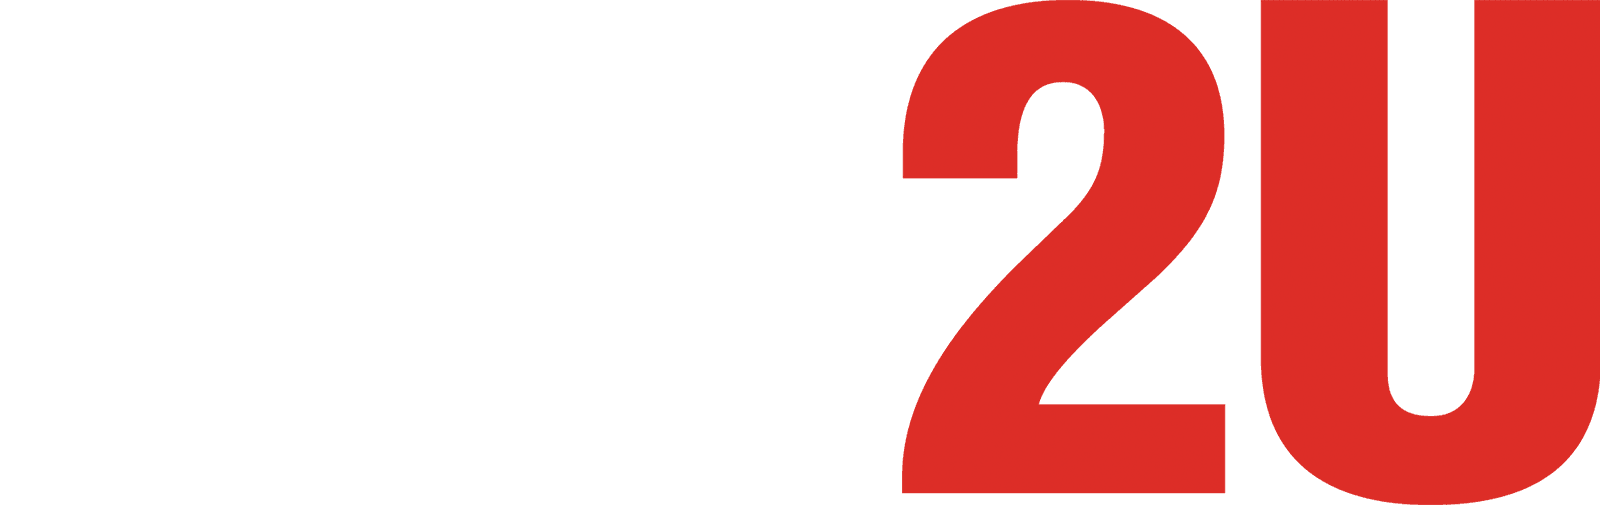 Happy Death Day 2U logo